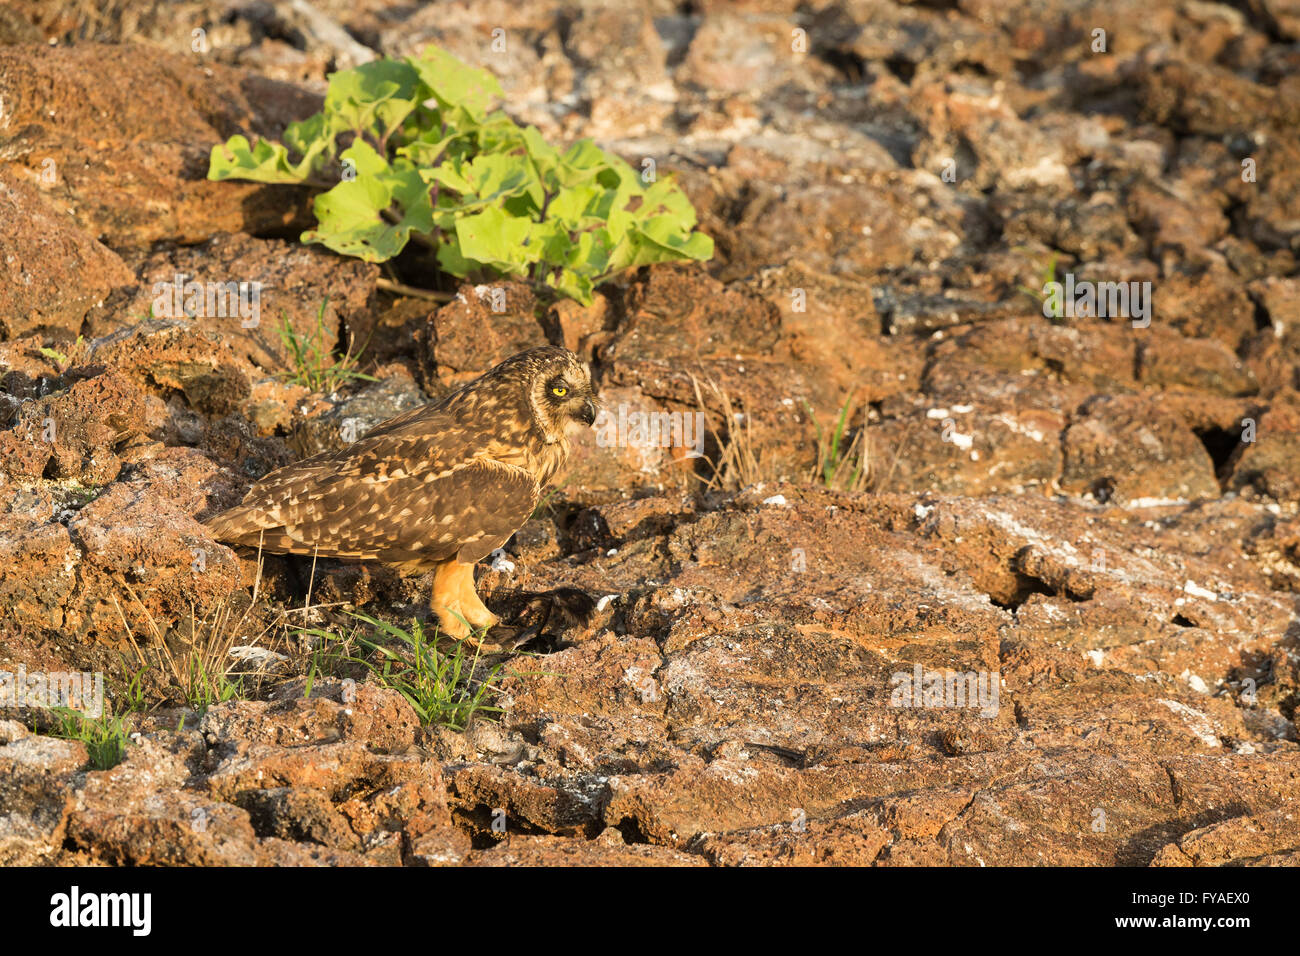 Hibou des marais Asio flammeus galapagoensis, des profils avec shearwater proie, el Barranco, Isla Genovesa, Îles Galápagos en avril. Banque D'Images